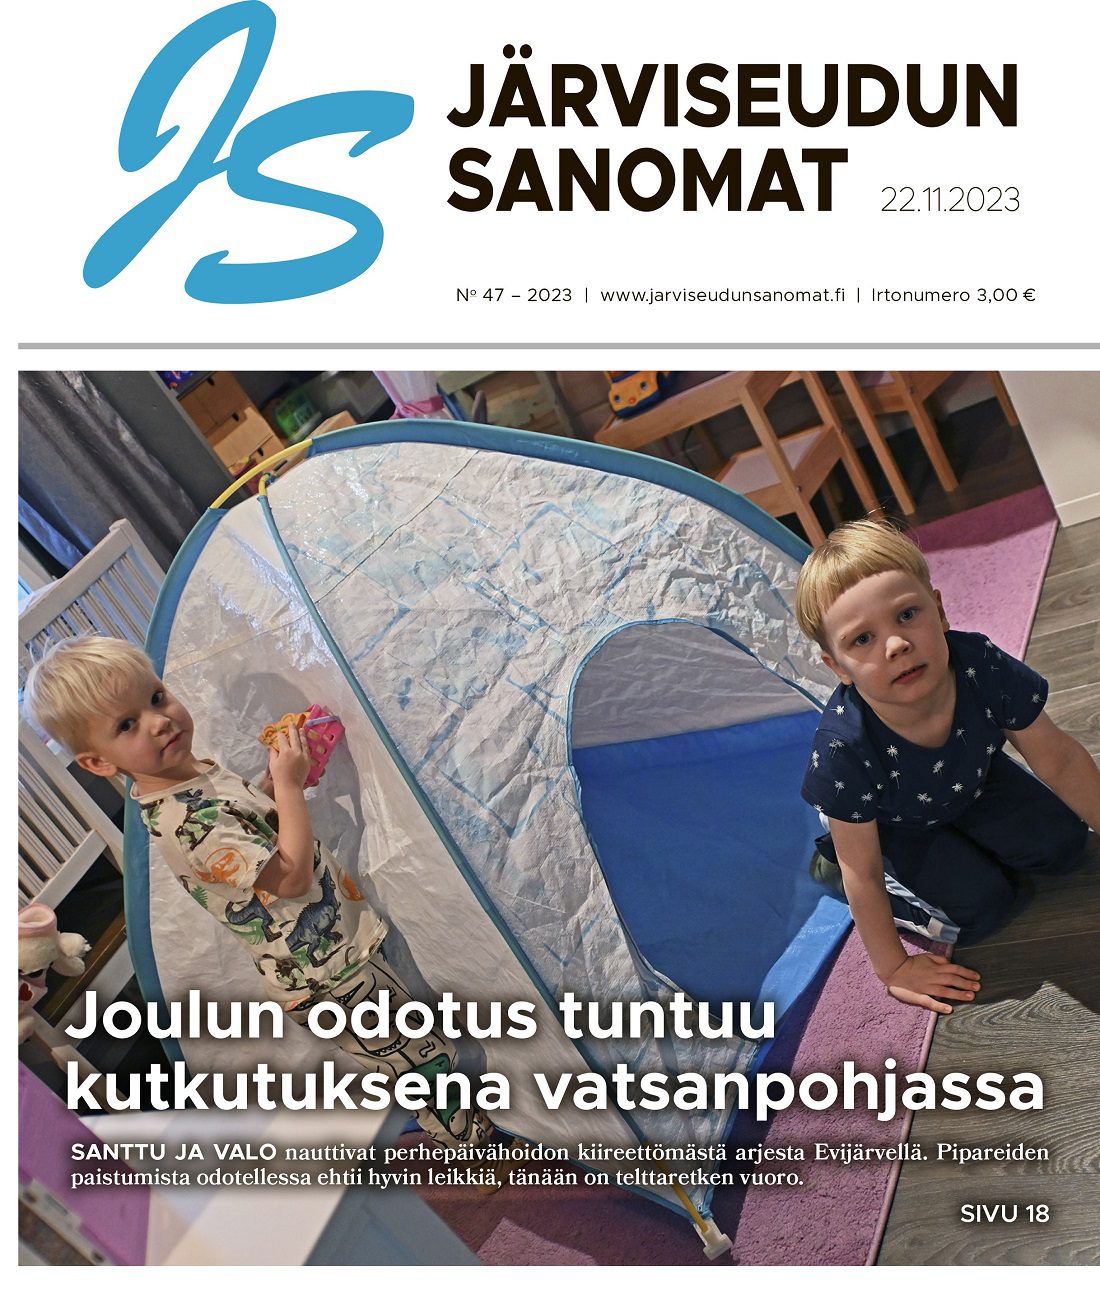 Järviseudun Sanomien isojakonumero 22.11.2023 on vapaasti luettavissa lehden kotisivuilla.